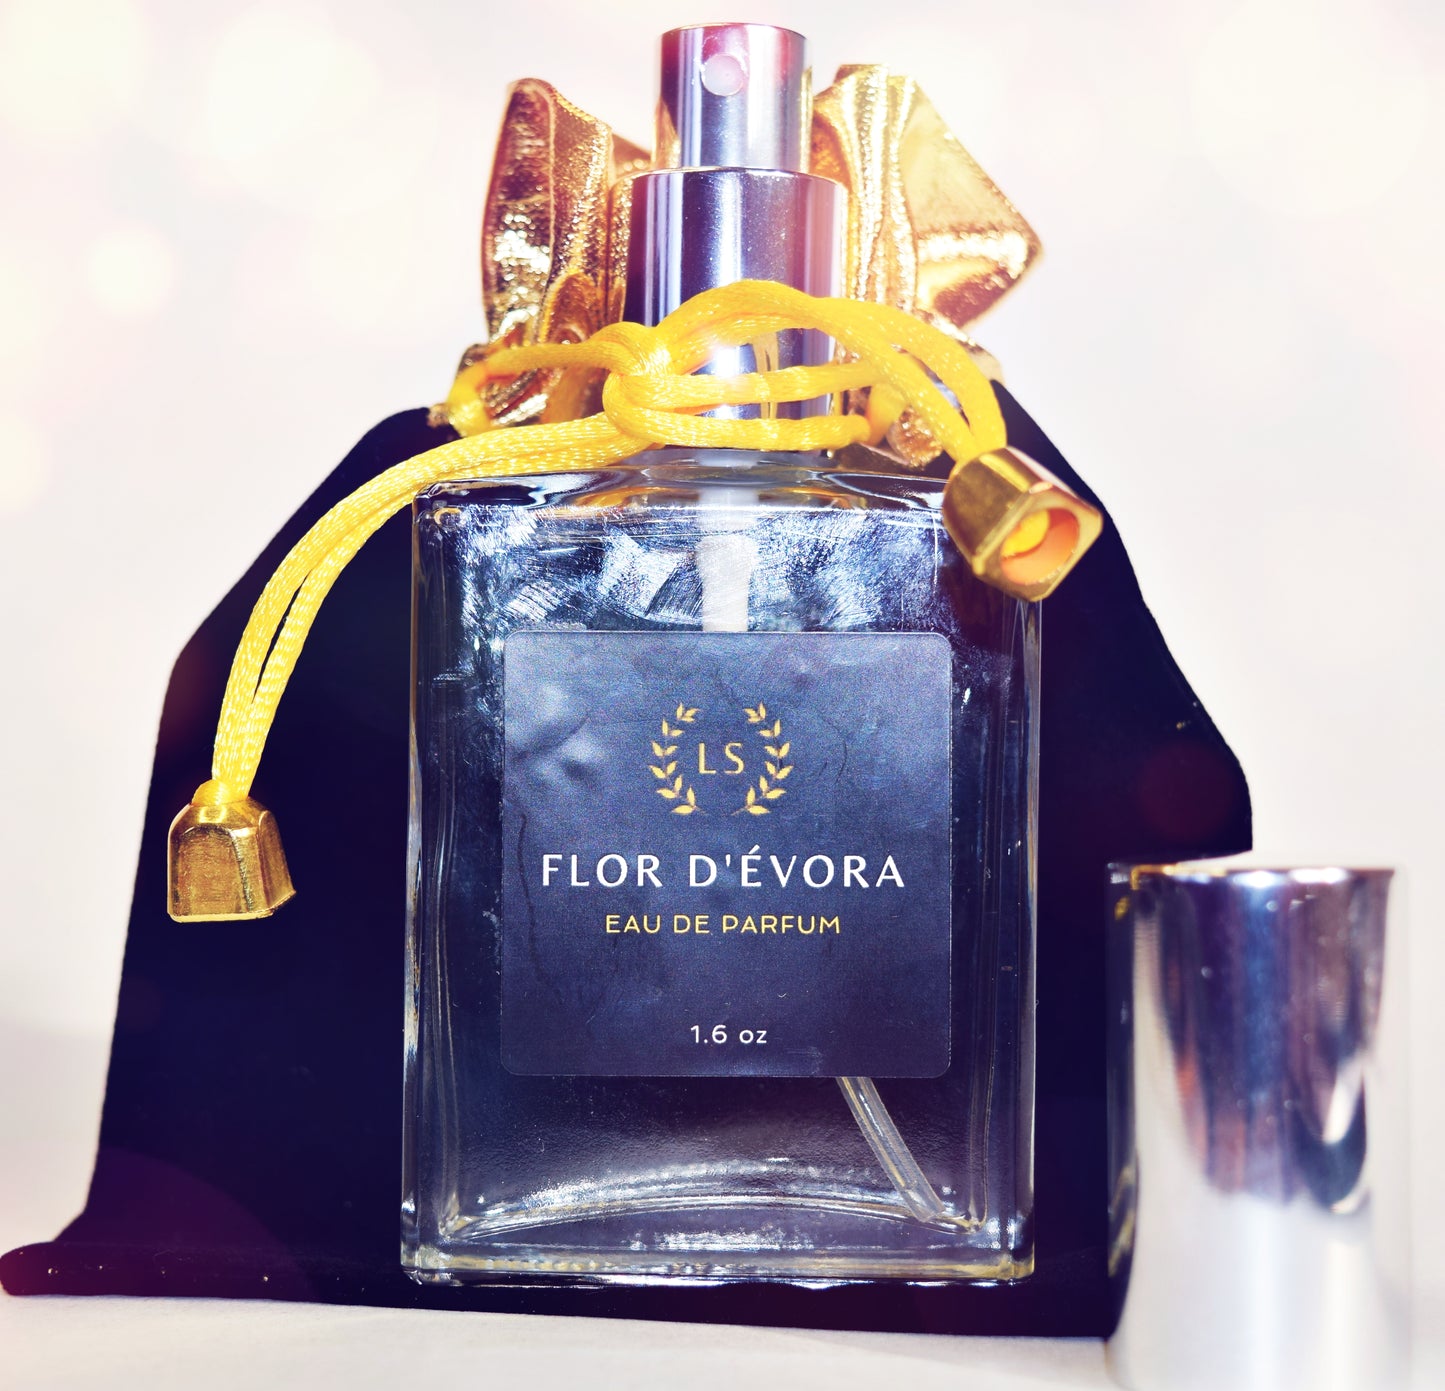 Eau de Parfum Flor D'Évora - Rosewood, Lily, Amber, Sandalwood for Sensual Floral Long Lasting Aromas